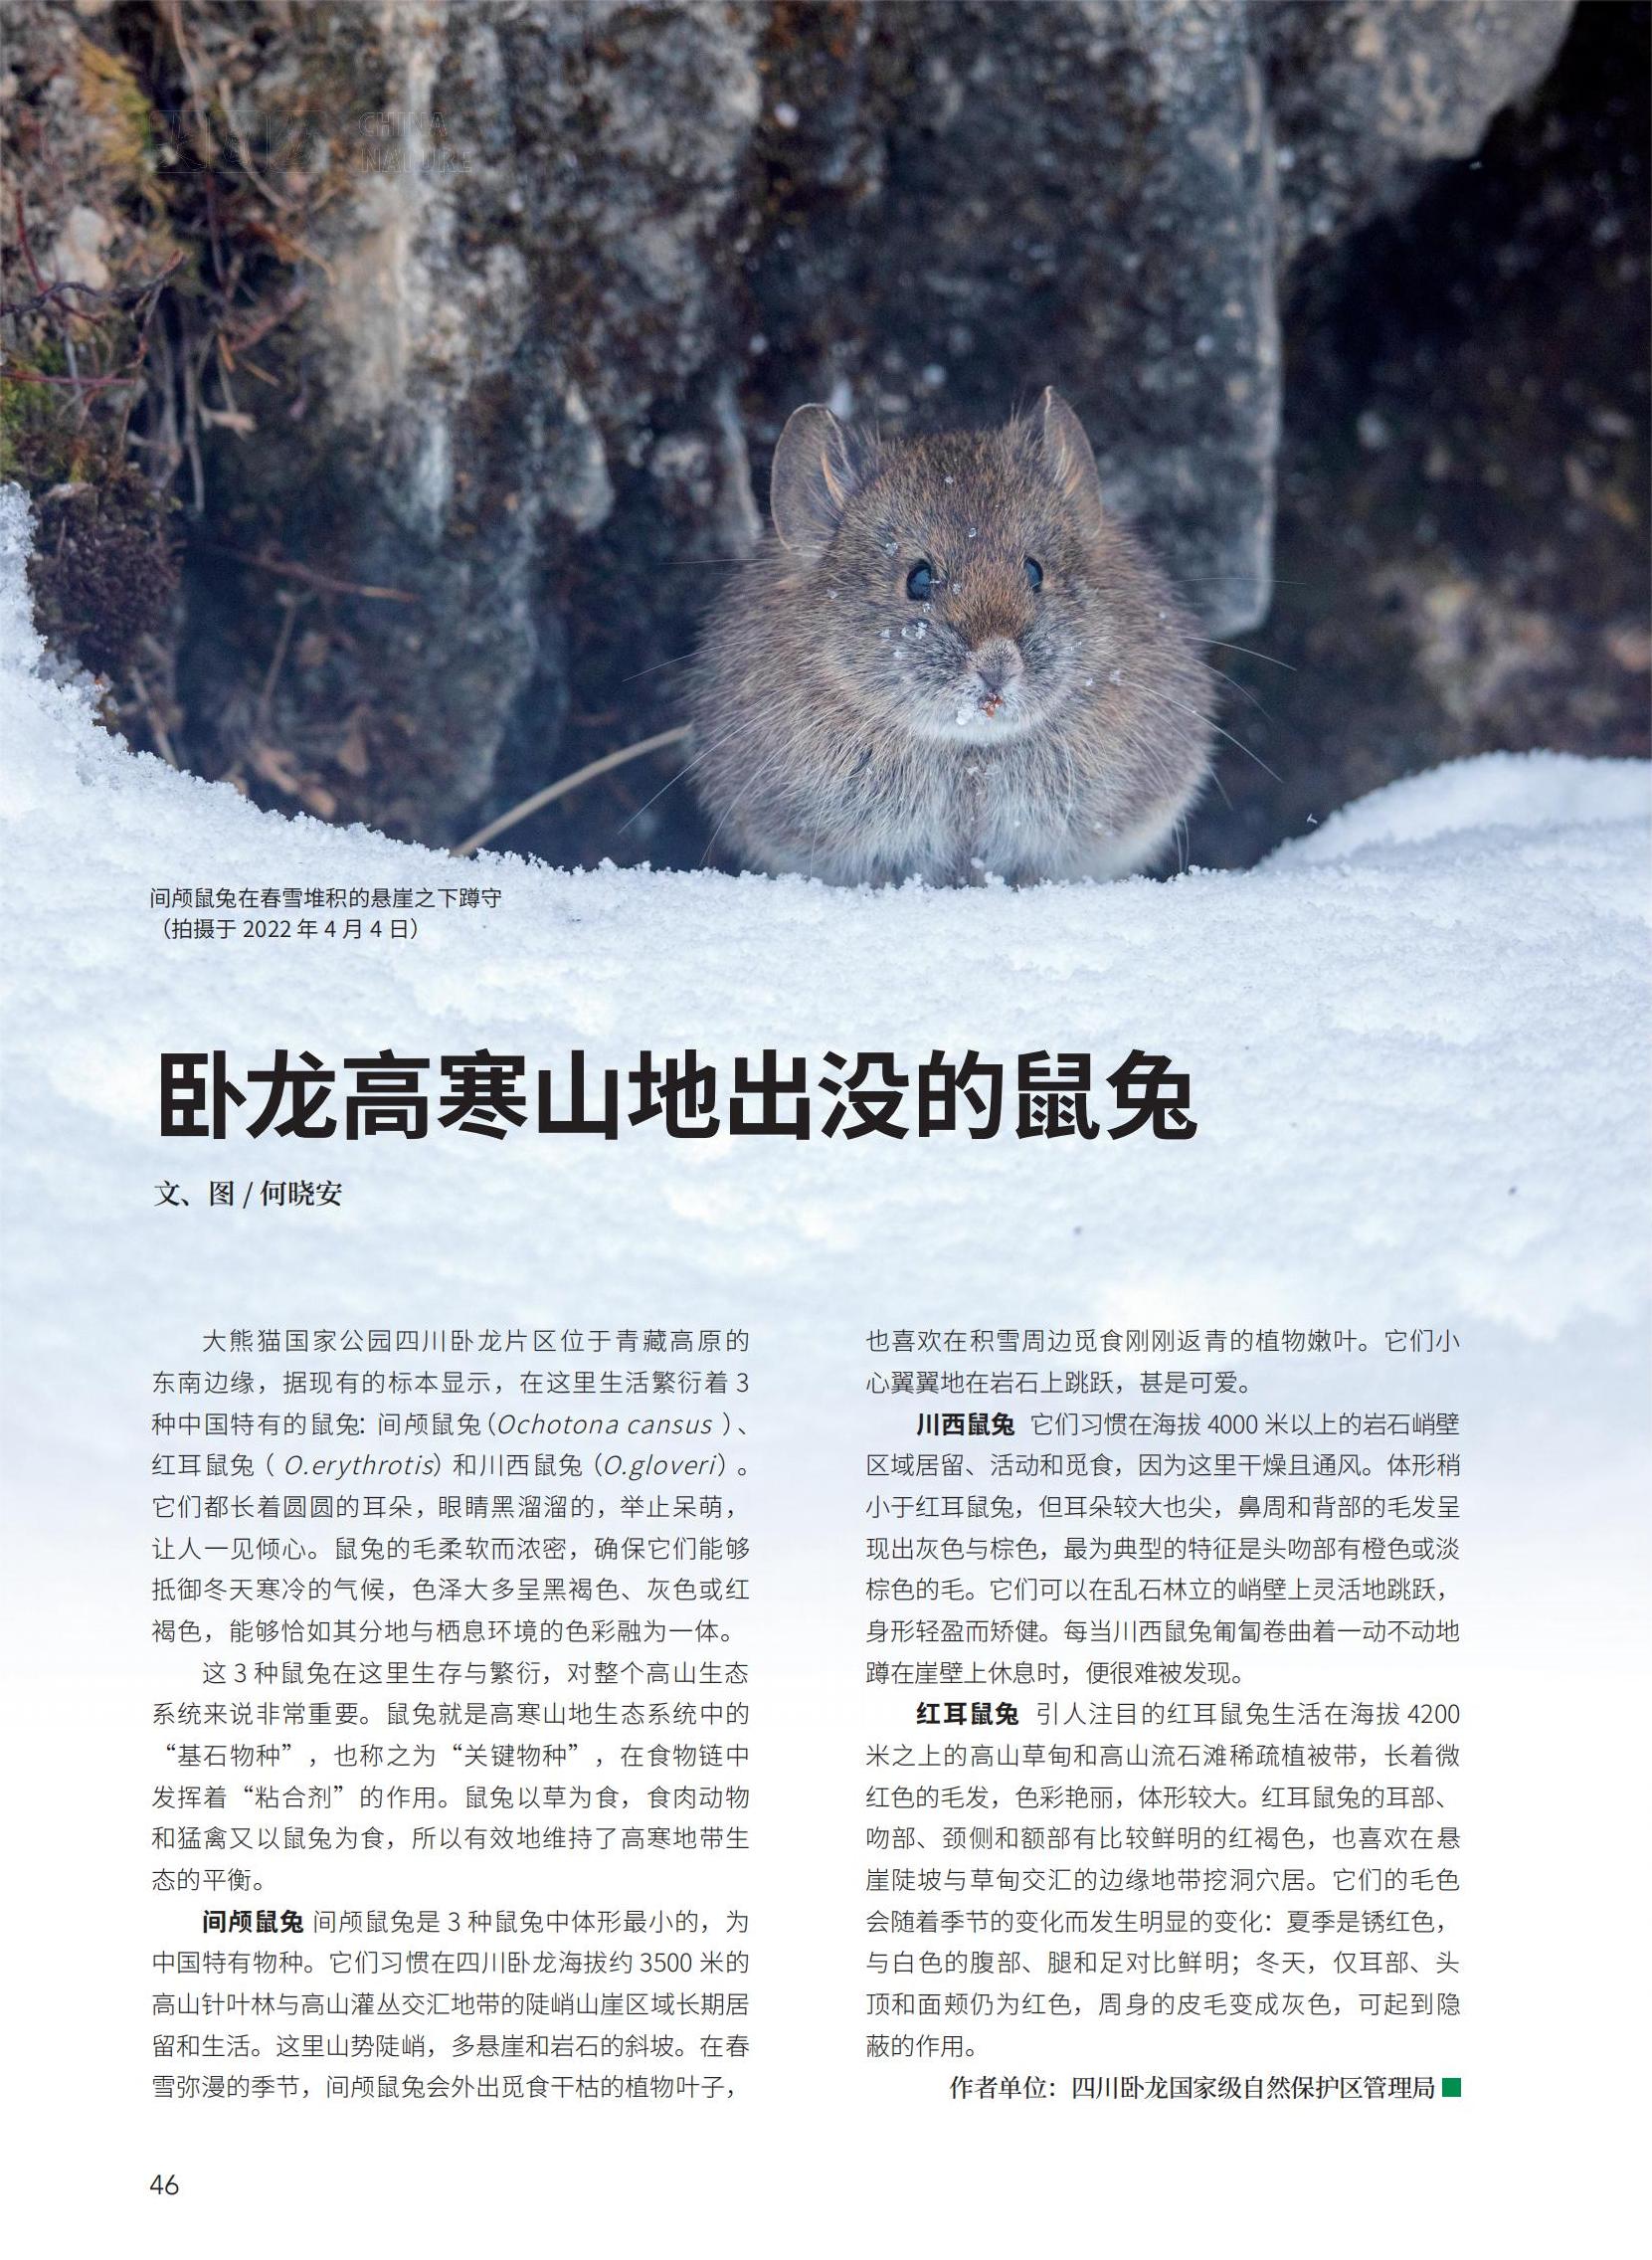 46-47卧龙高寒山地出没的鼠兔-何晓安_00.jpg